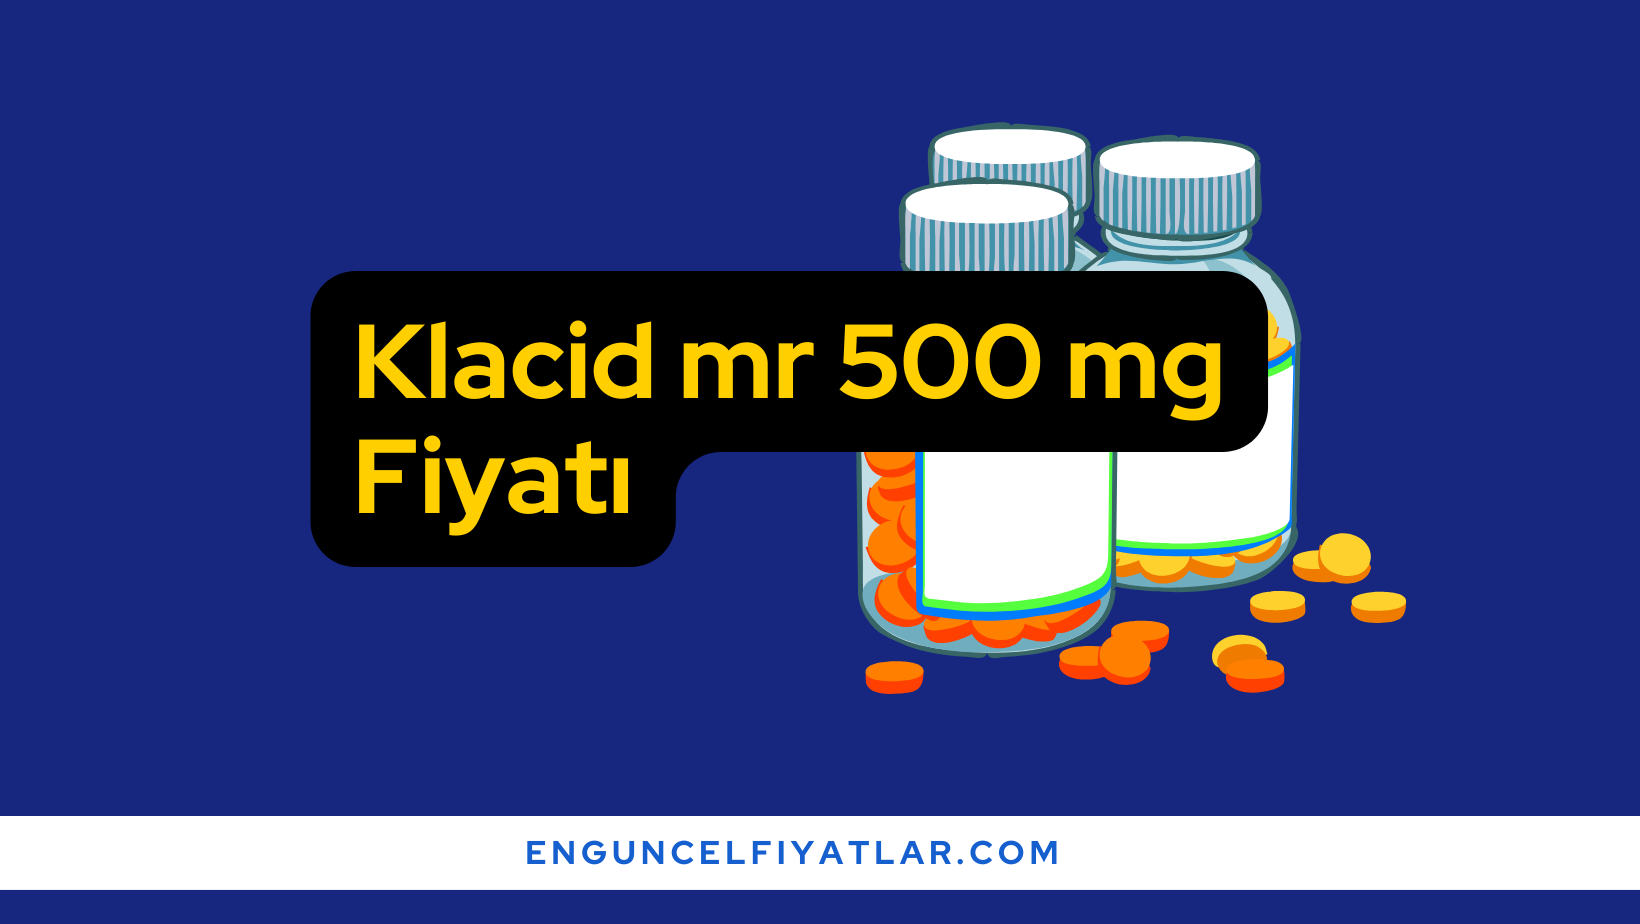 Klacid mr 500 mg Fiyatı